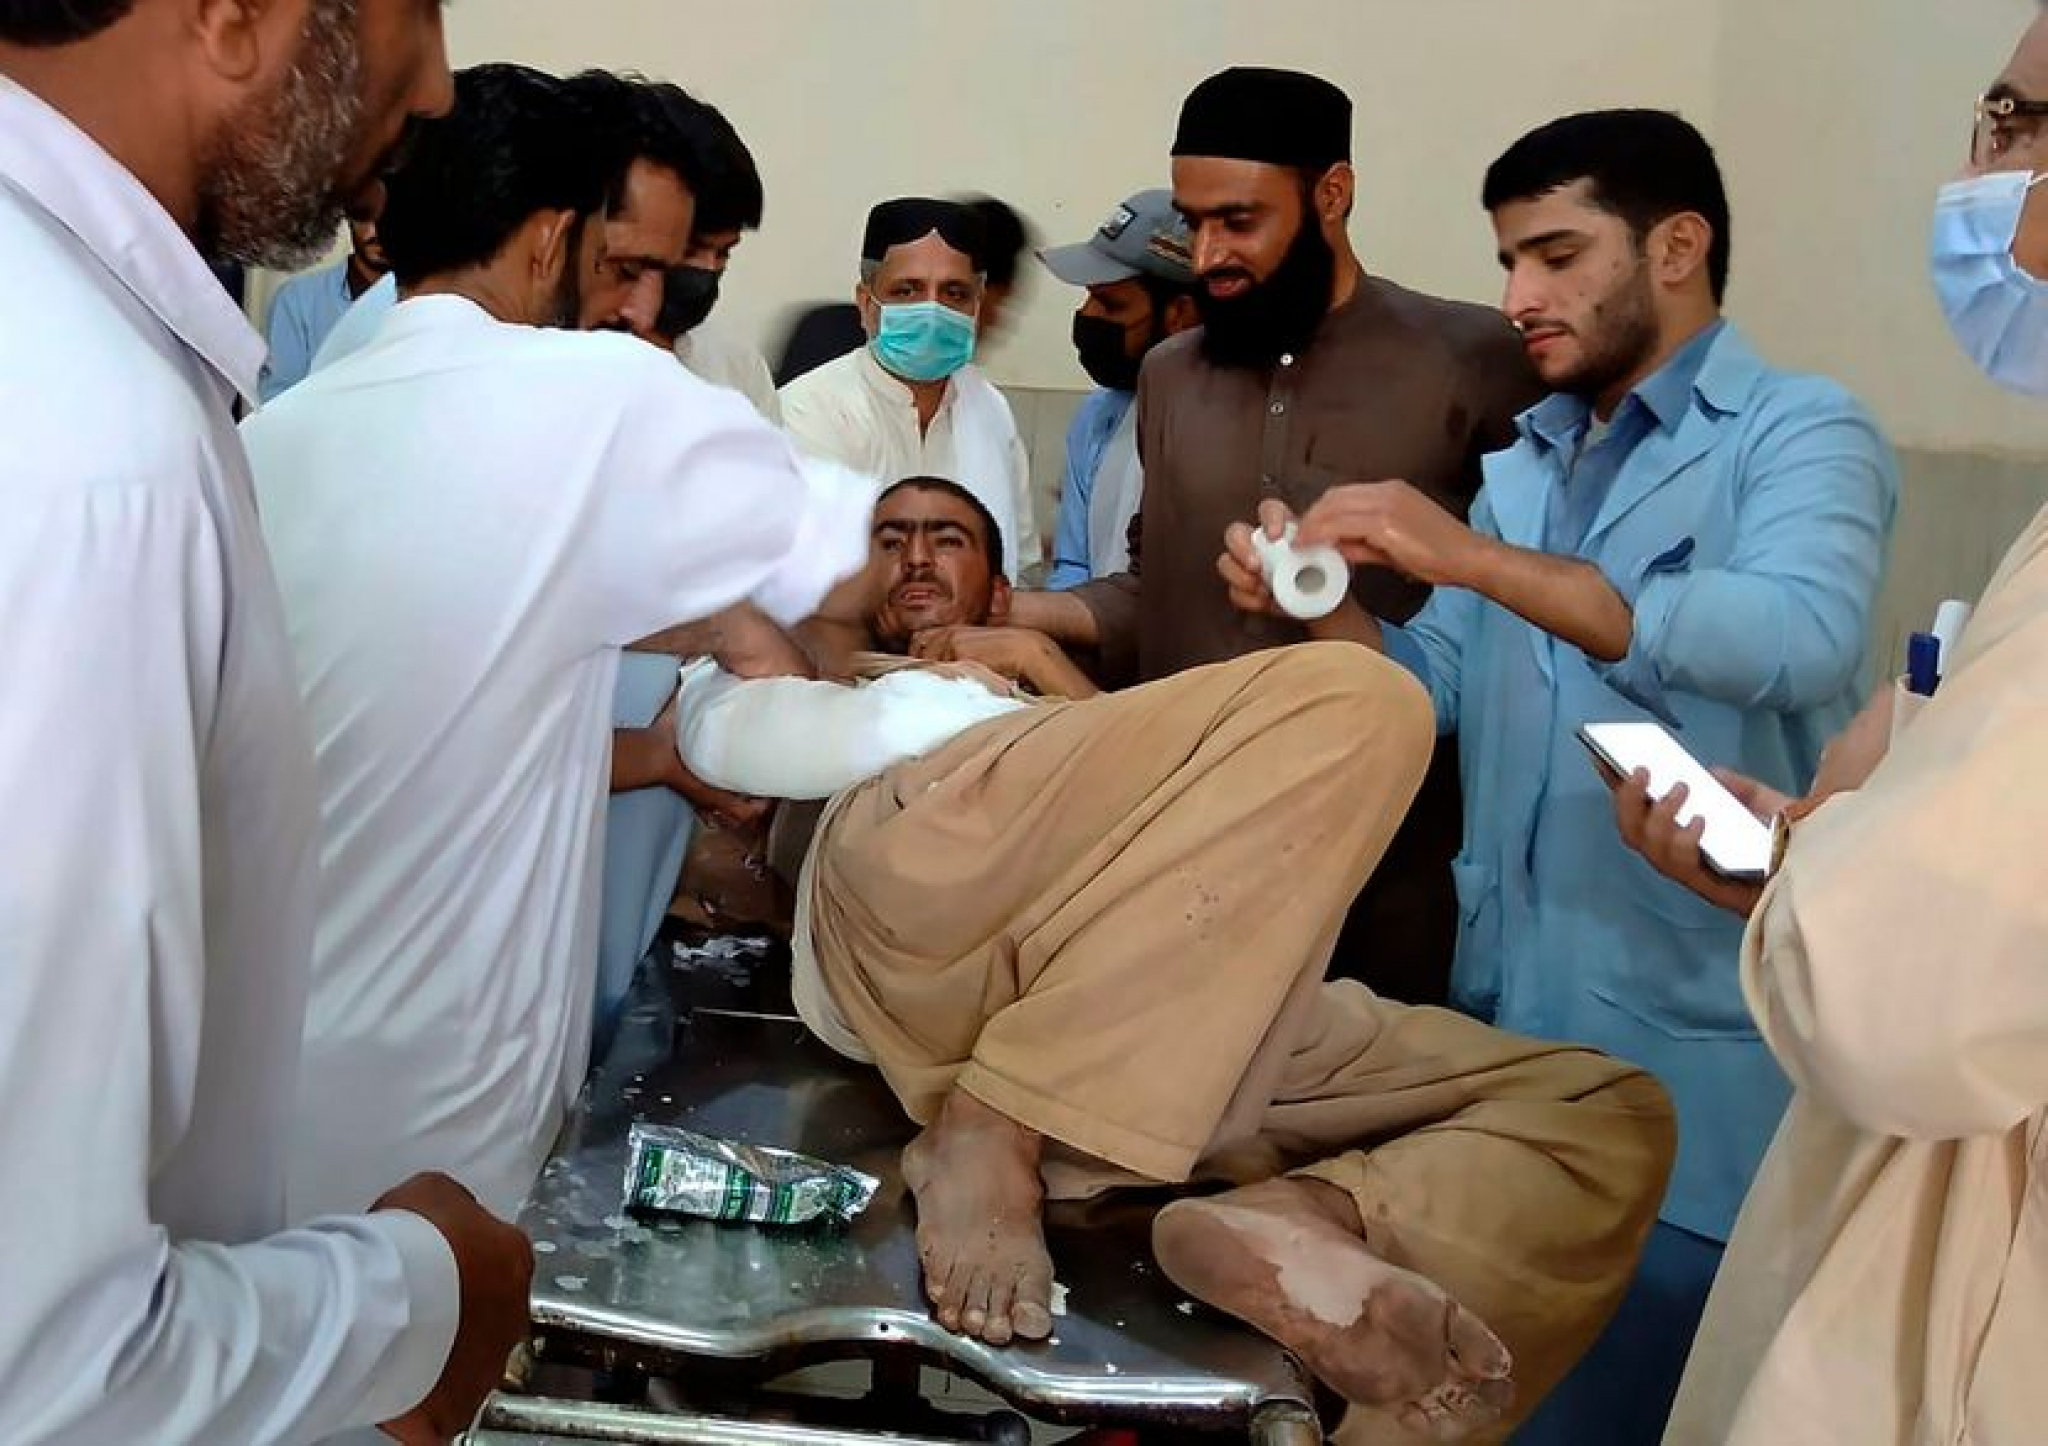 Stravična nesreća u Pakistanu: Prevrnuo se autobus, poginule najmanje 23 osobe (FOTO/VIDEO)